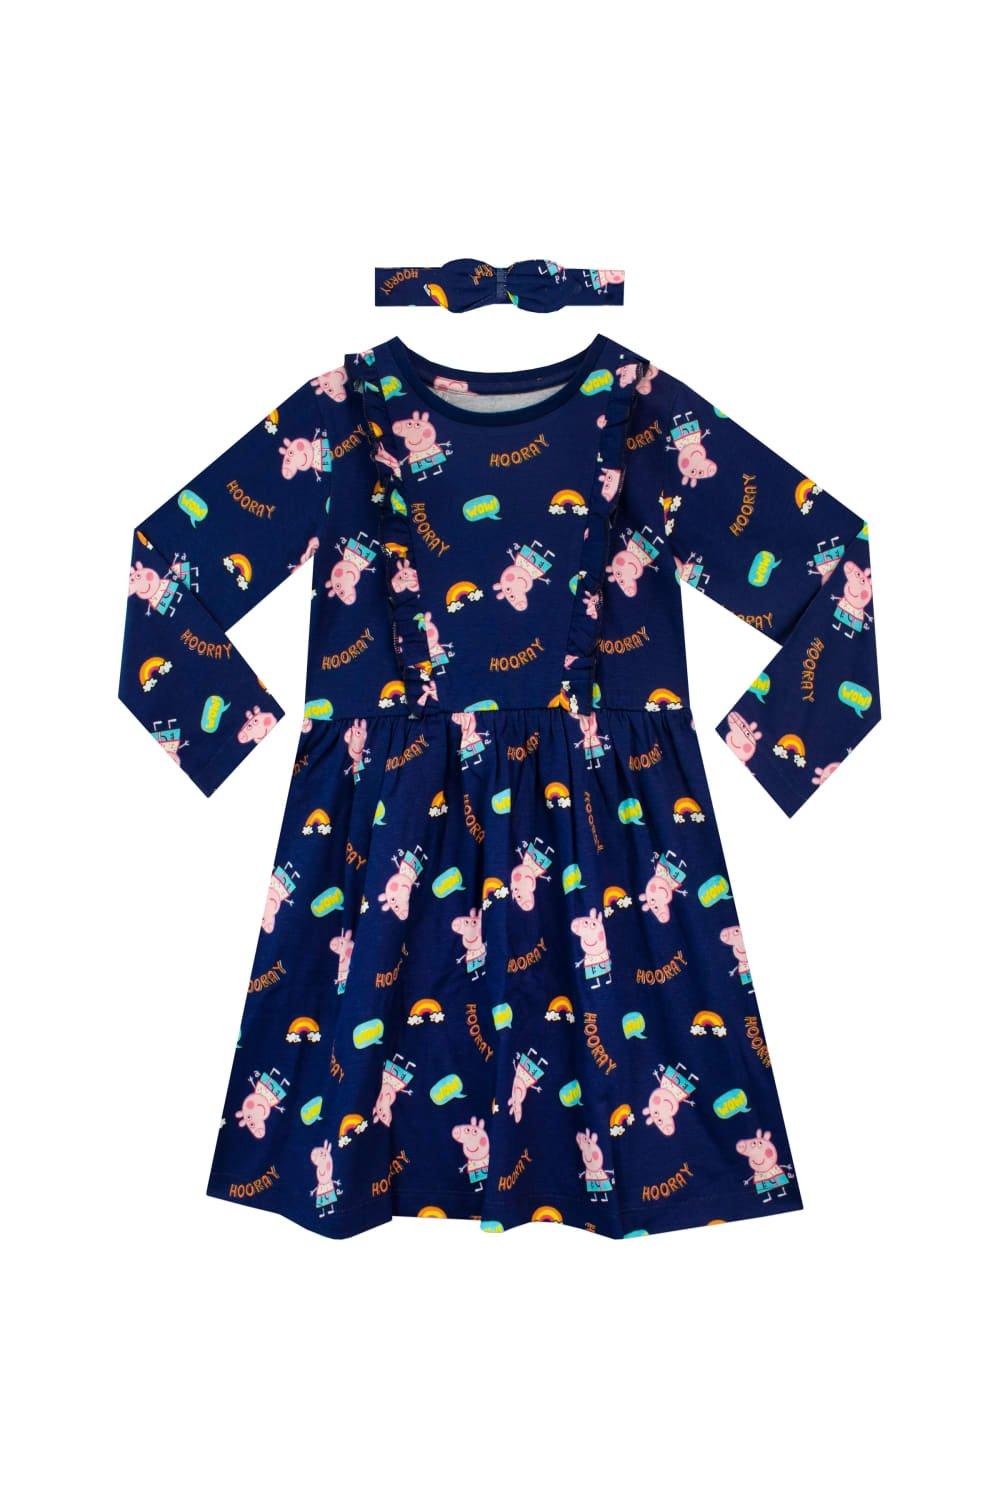 Радужное платье и комплект с повязкой на голову Peppa Pig, синий платья и юбки bossa nova комплект платье и повязка горошинка 063мп